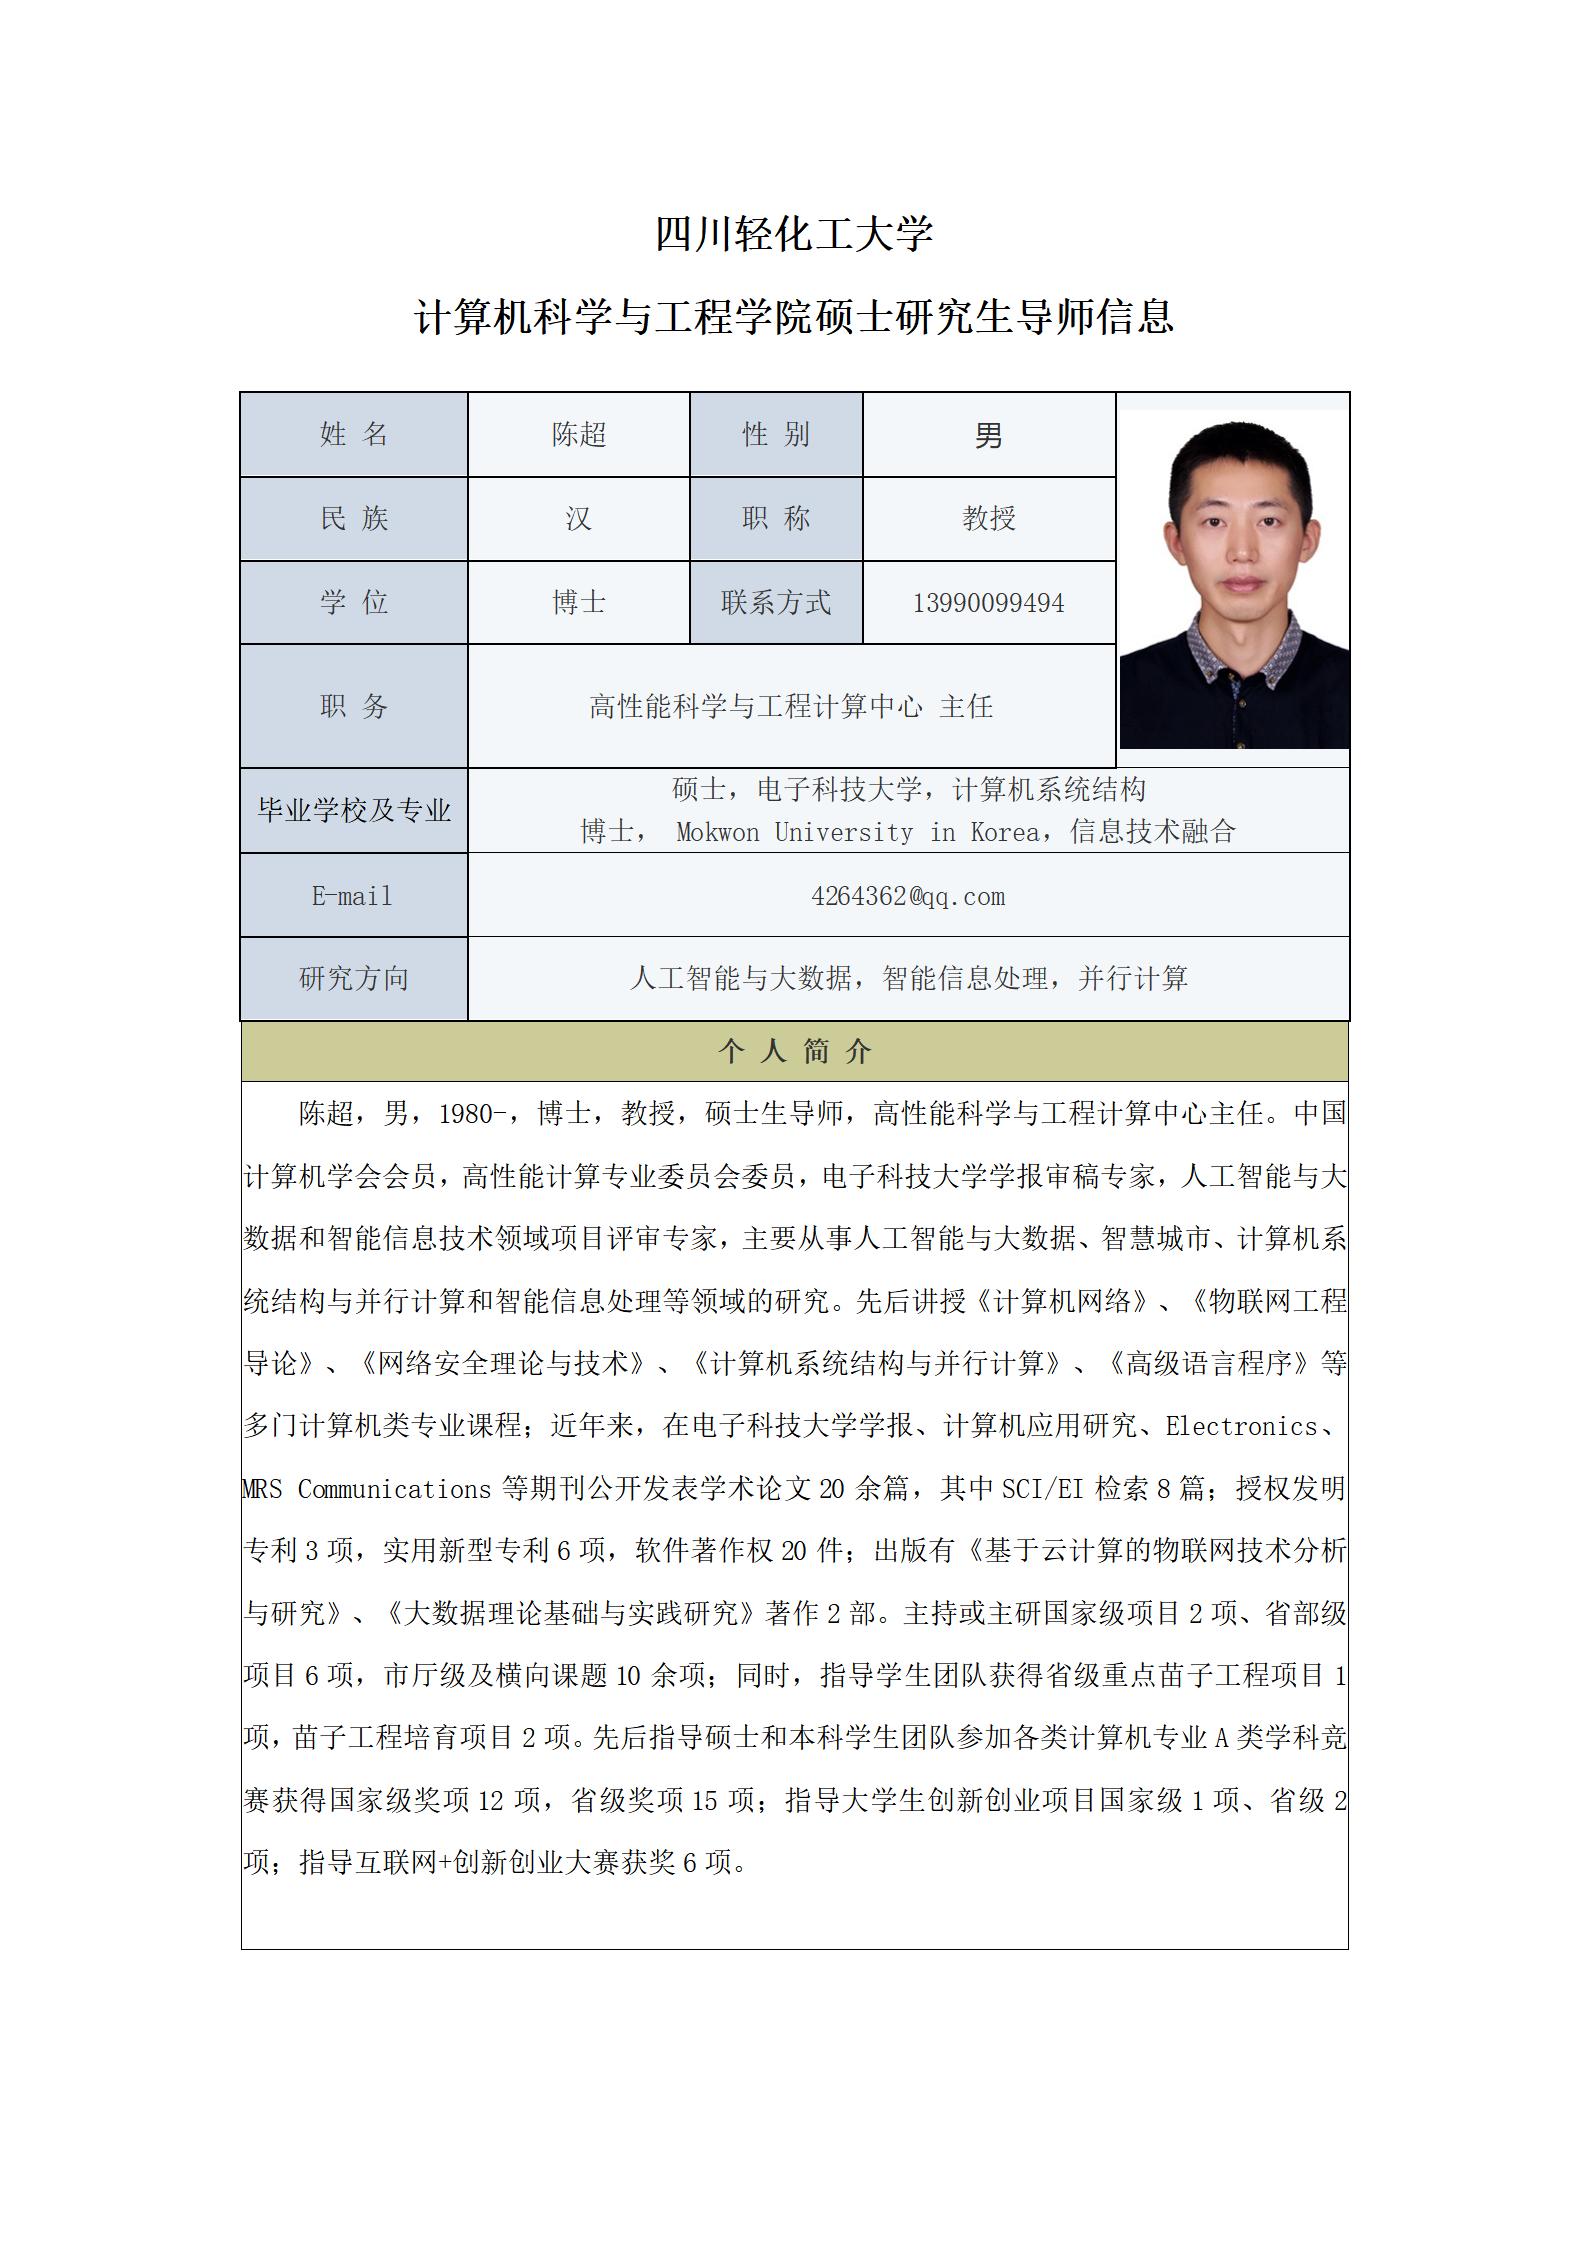 陈超-2021计算机科学与工程学院硕士生导师信息表_01.jpg